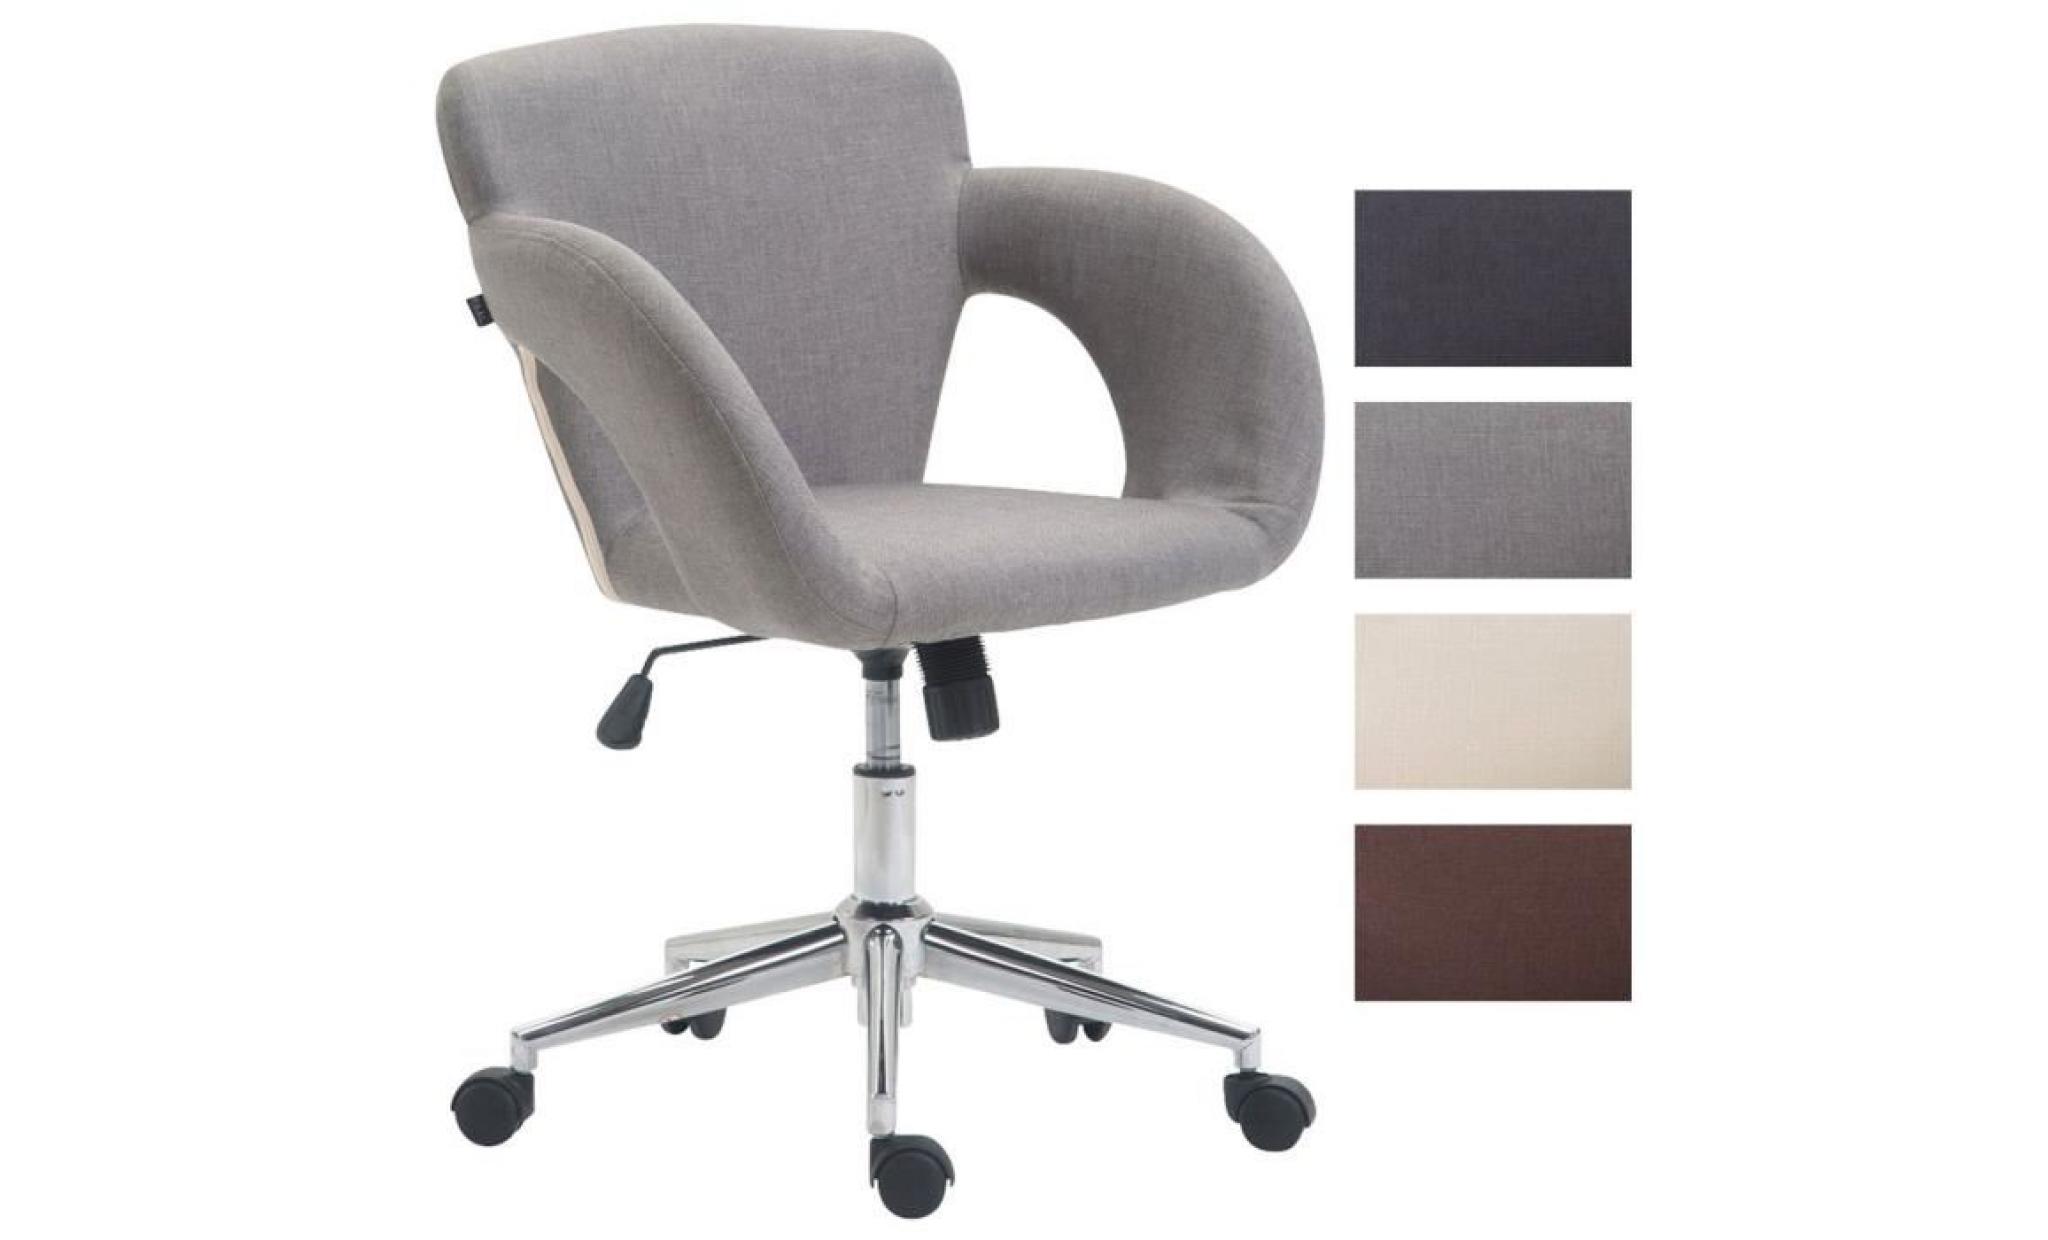 clp chaise de bureau edison en tissu, fauteuil de bureau avec accoudoirs, mécanisme d'inclinaison intégré, hauteur ajustable